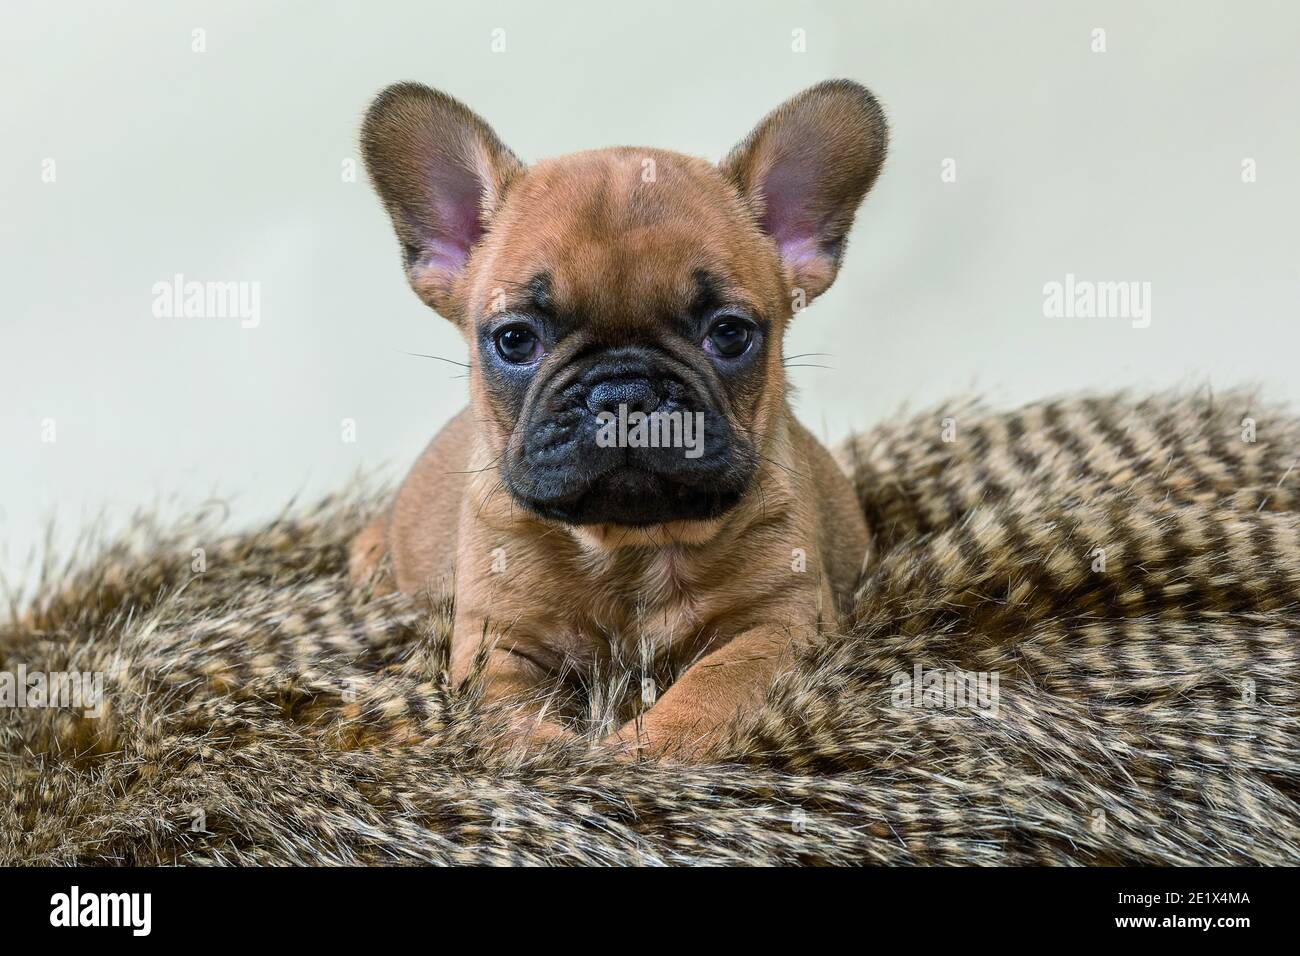 Bulldog francese, cucciolo, 7 settimane, marrone chiaro con faccia nera, cucciolo su pelliccia, scatto in studio Foto Stock